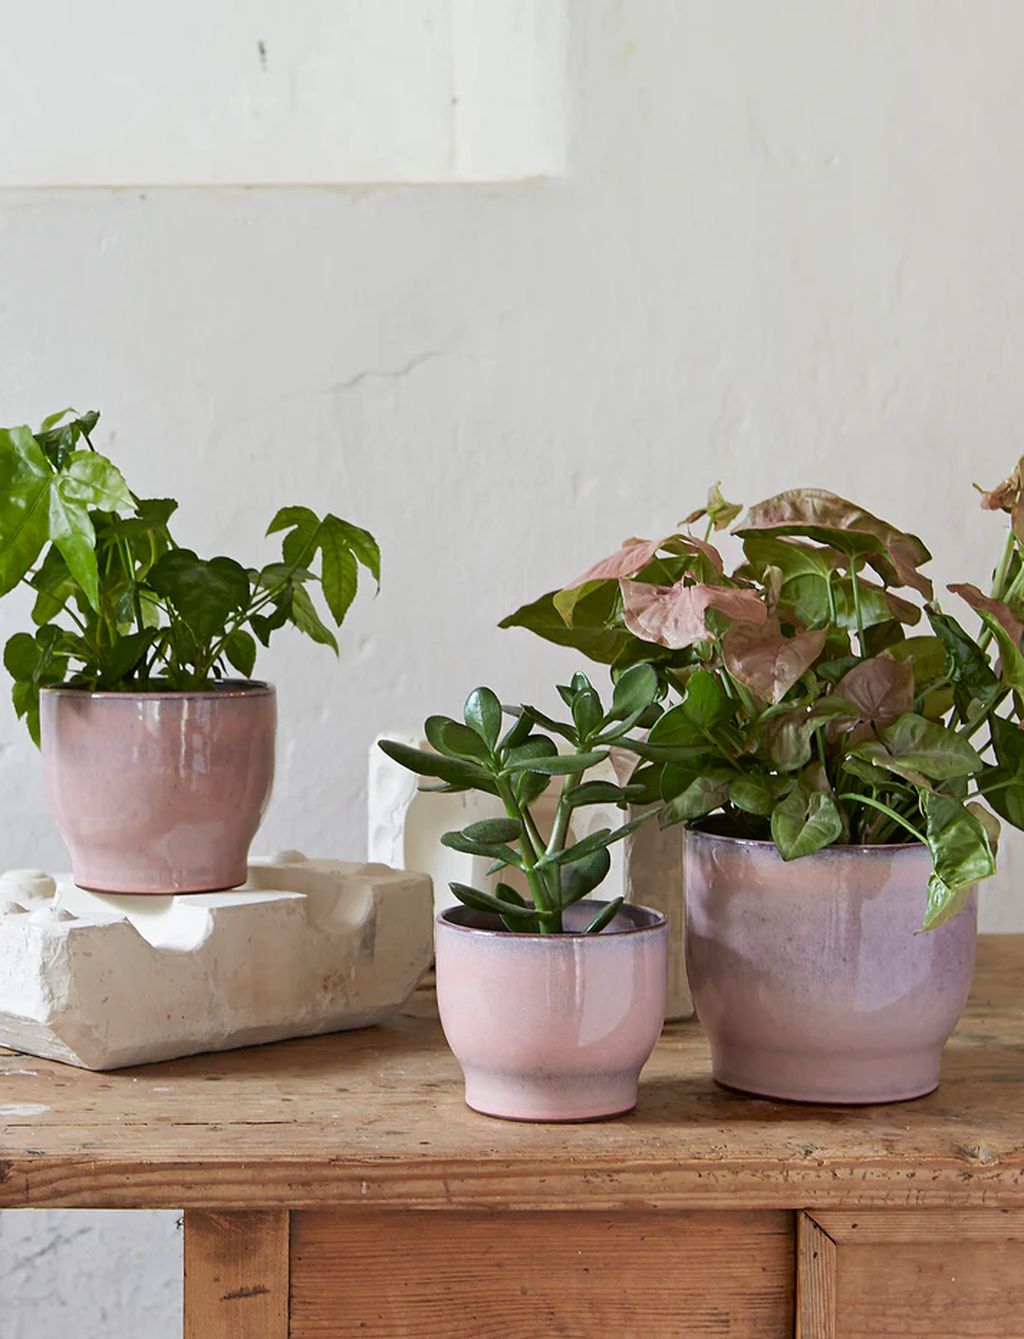 Knabstrup Keramik Flower Pot ø 16,5 Cm, Pink